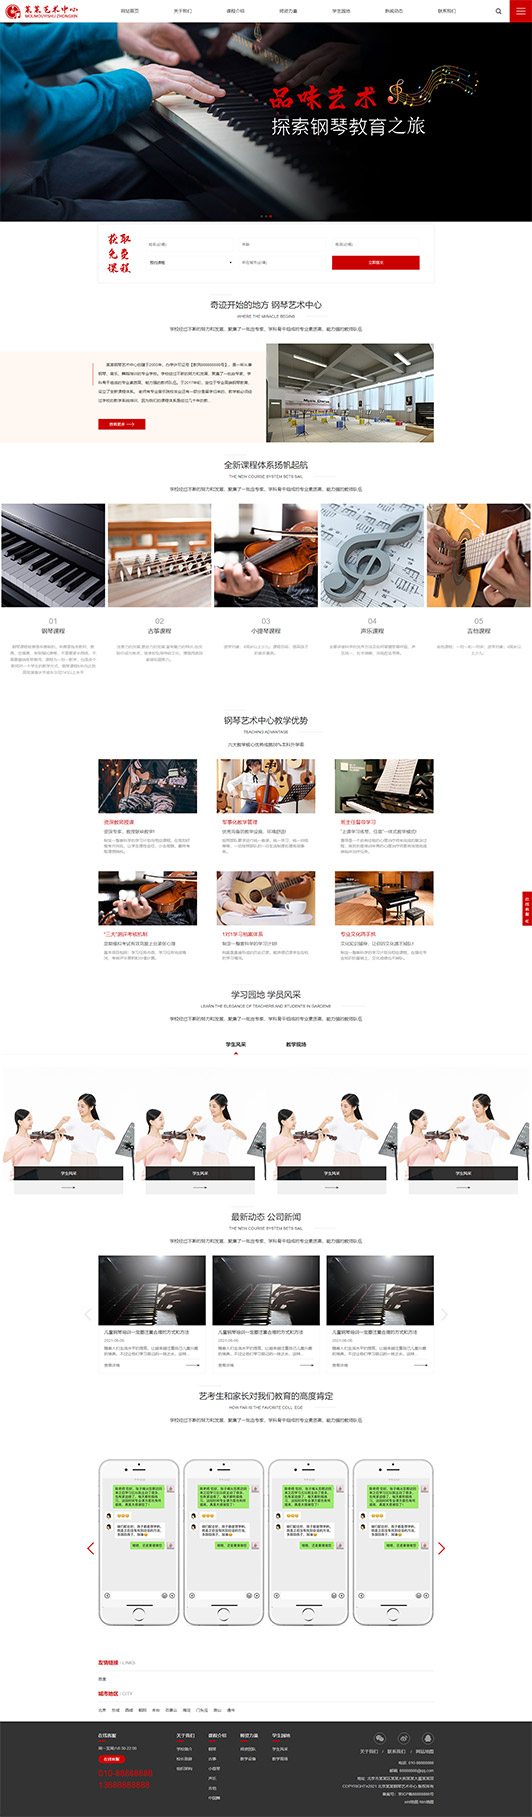 赣州钢琴艺术培训公司响应式企业网站